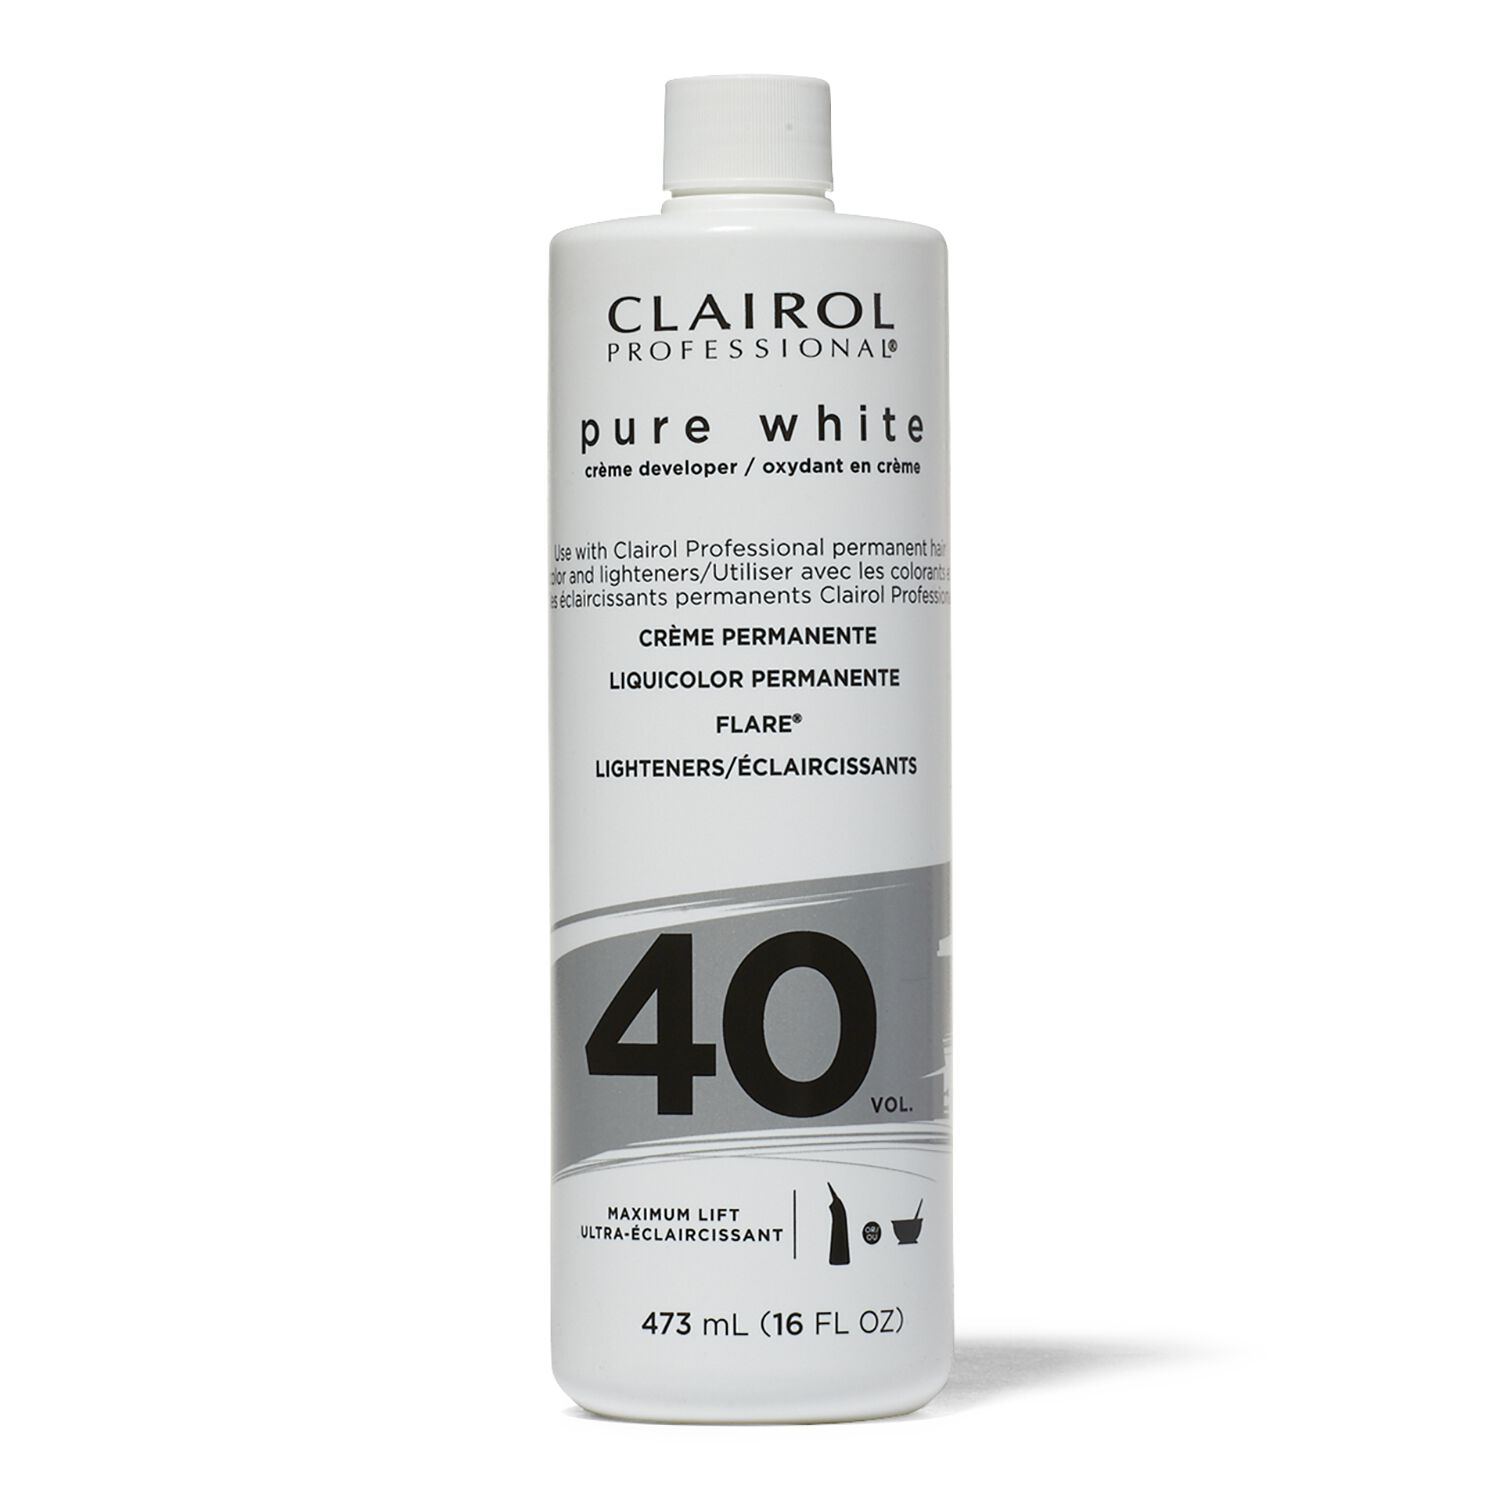 Clairol Professional 40 Volume Pure White Creme Developer Developer